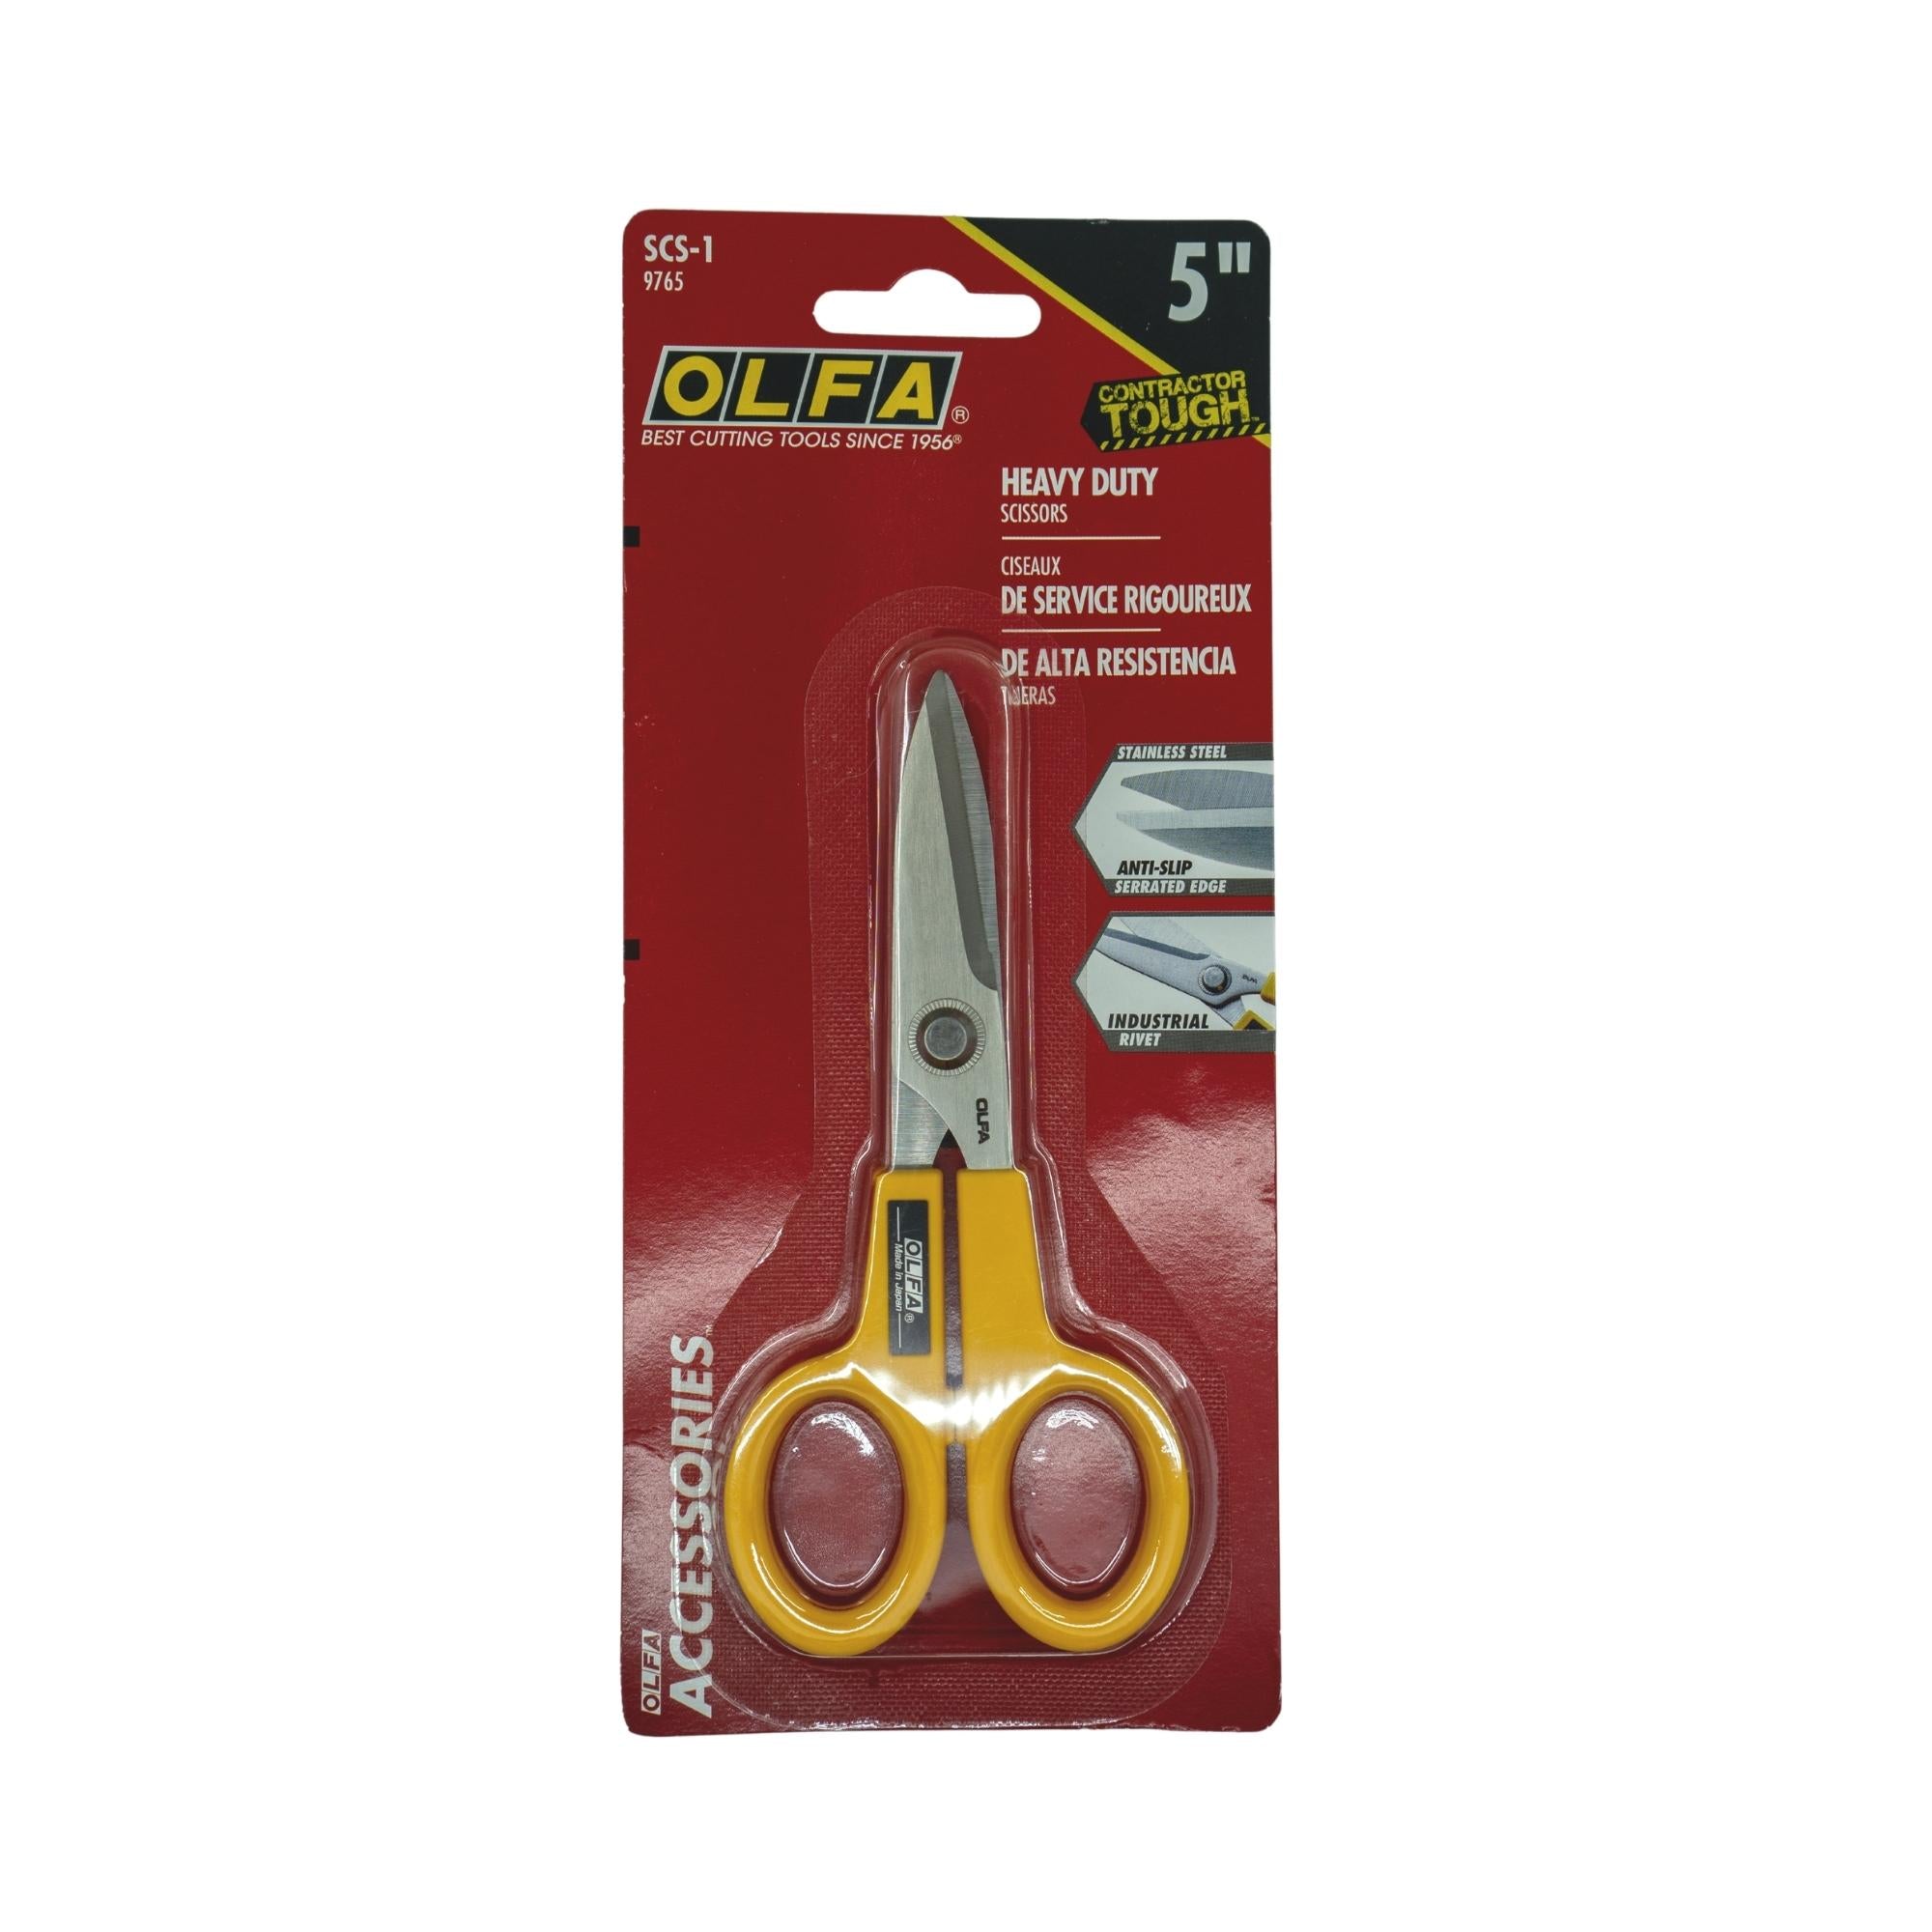 OLFA 5'' Stainless Steel Scissors Serrated Edge